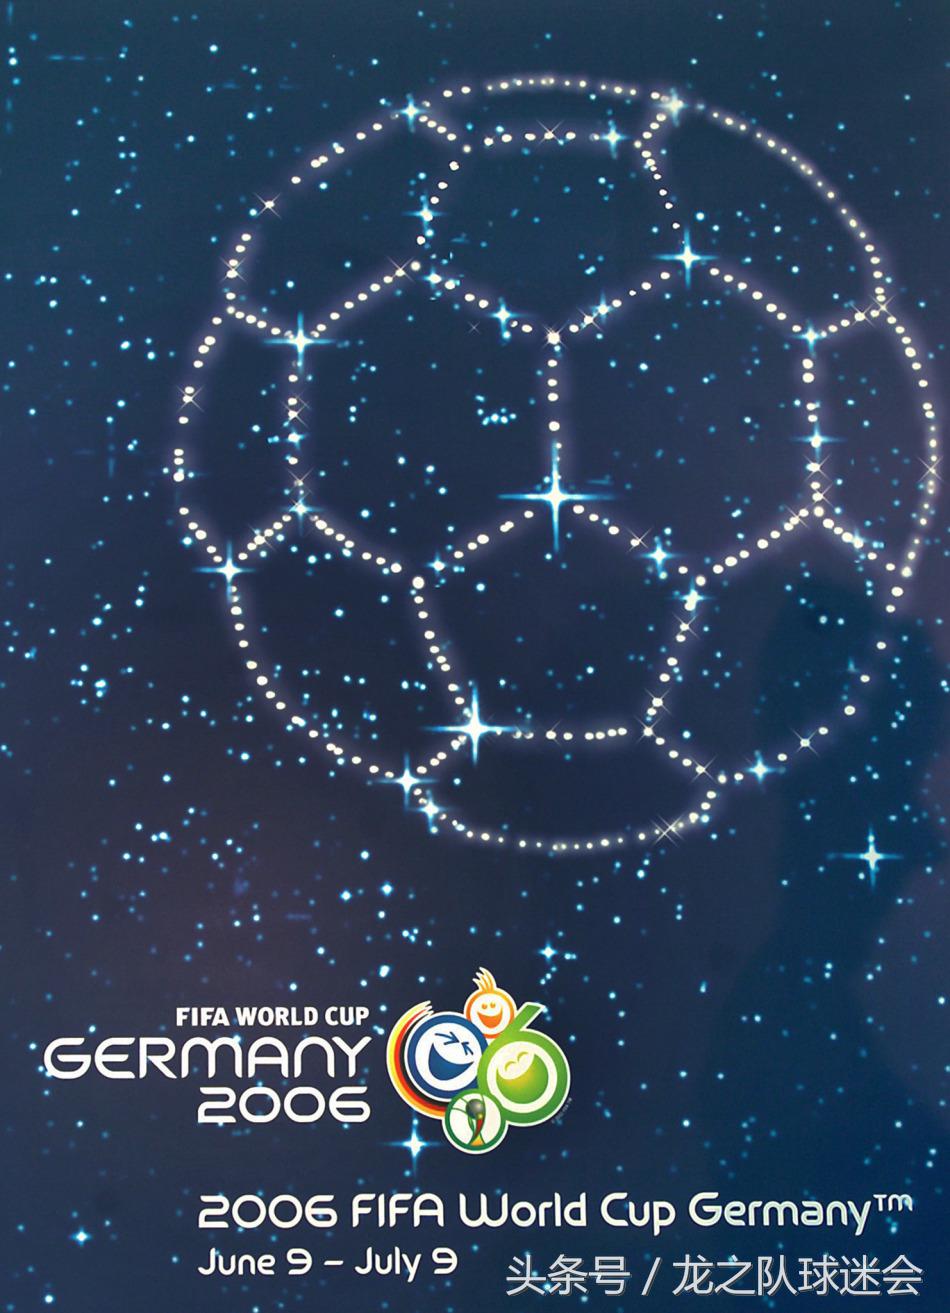 历年世界杯海报图片